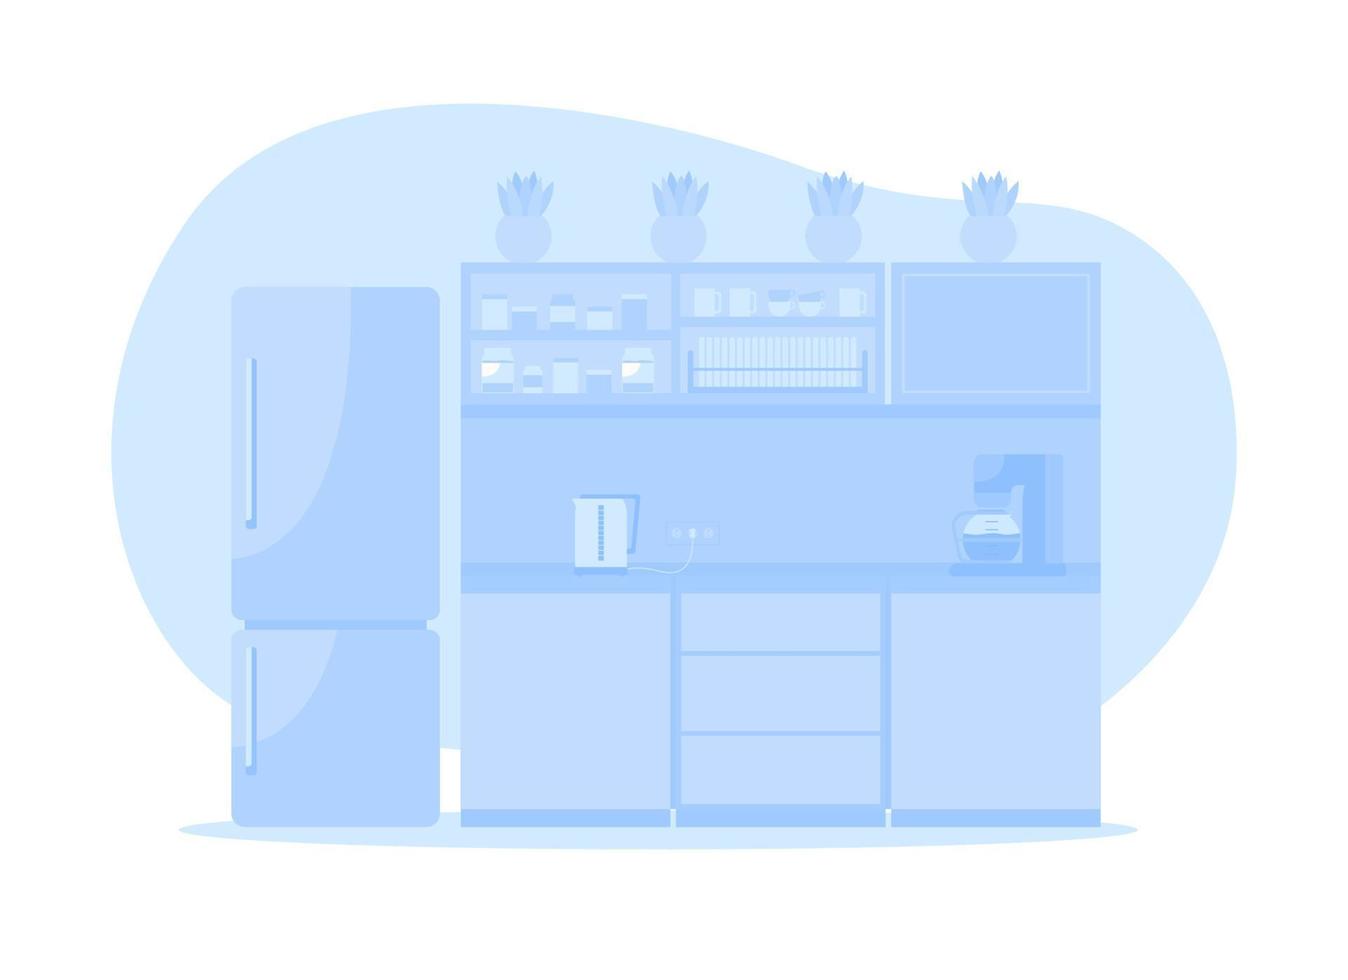 blauwe corporate keuken 2d vector geïsoleerde illustratie. kasten met inbouwapparatuur en koelkast. kantoor eethoek plat interieur op cartoon achtergrond. eetkamer kleurrijke scène